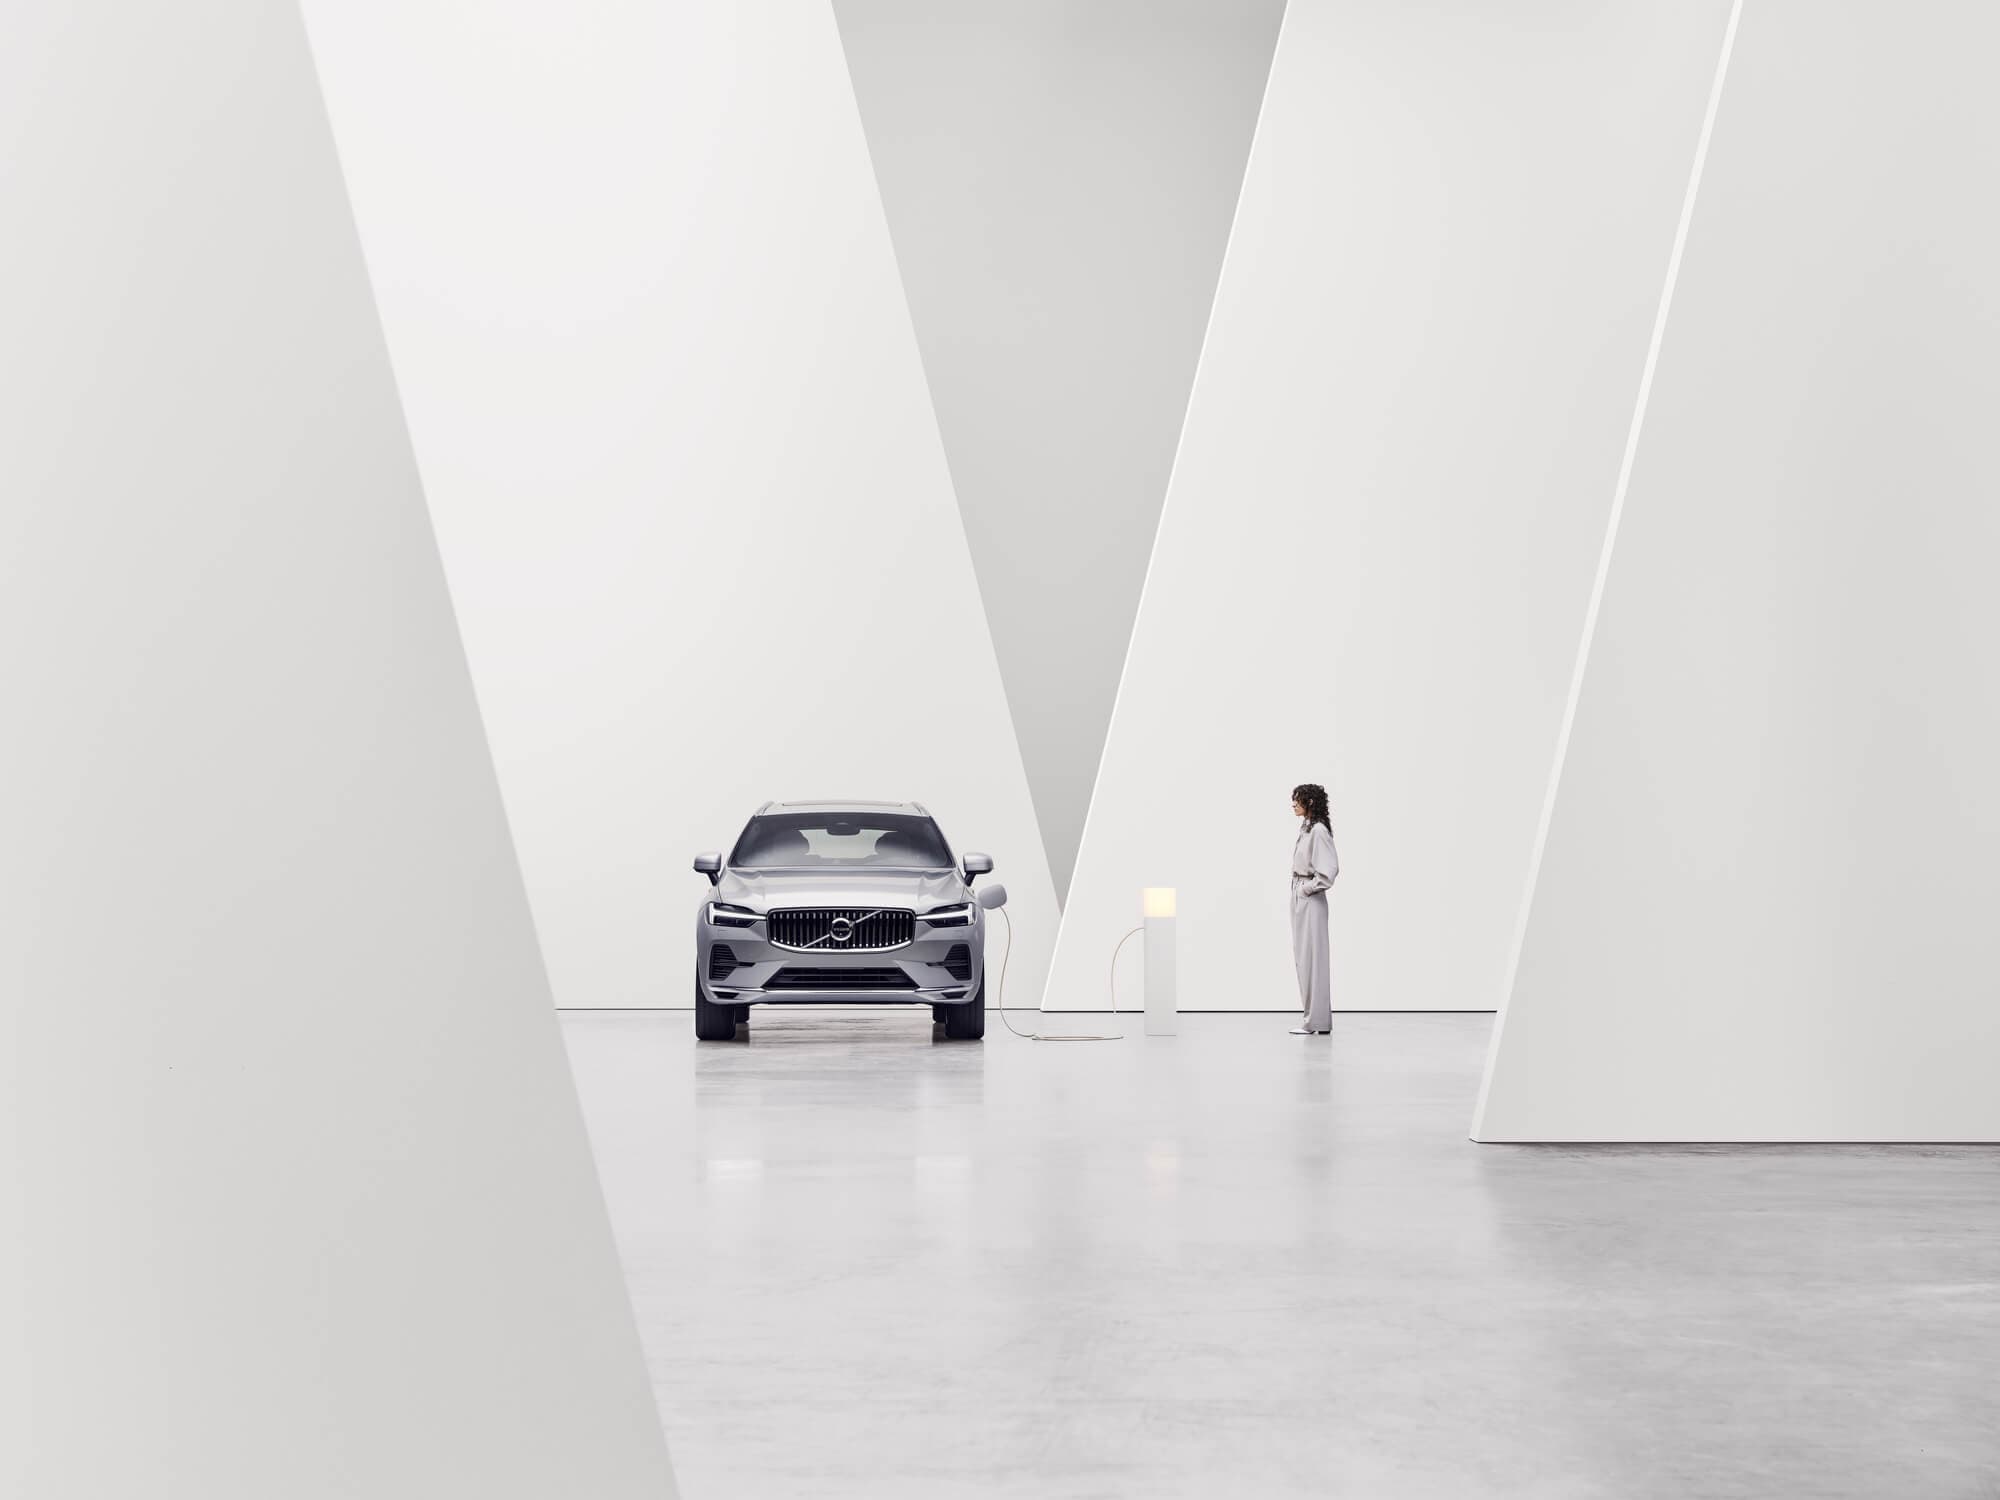 Vista frontal de um Volvo junto ao poste de carregamento num ambiente interior em branco